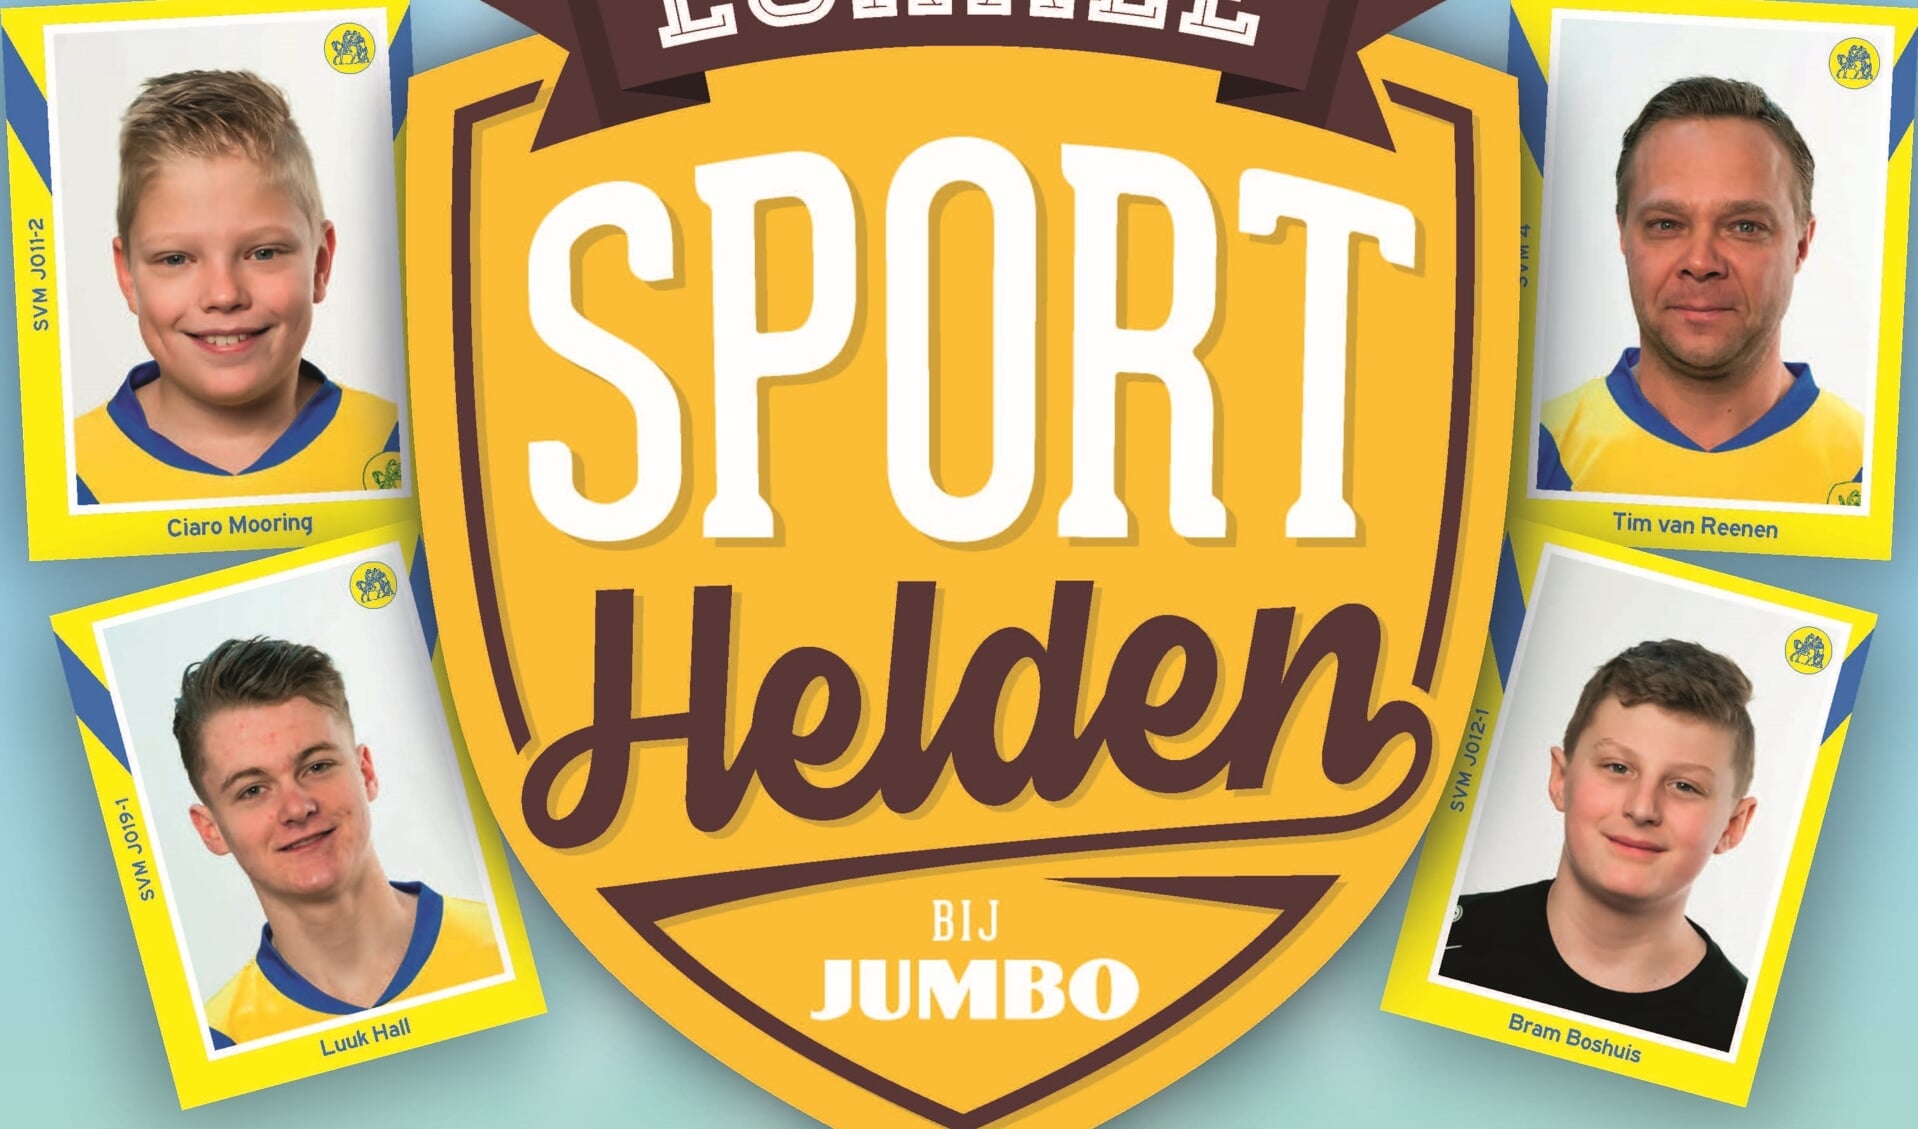 Lokale Sporthelden bij Jumbo Maartensdijk